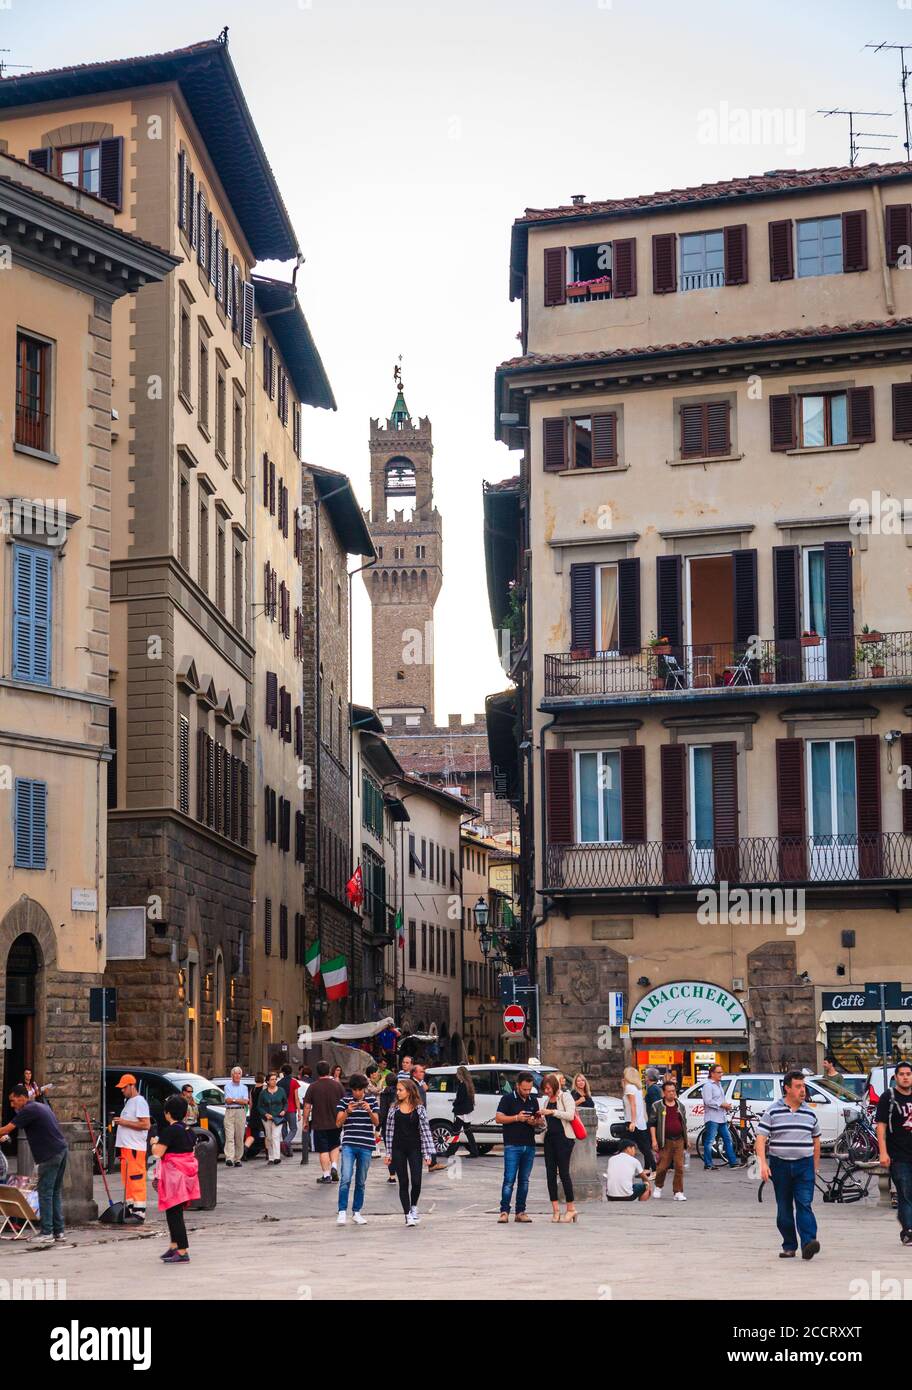 Florenz, Italien, 20. September 2015: Blick auf den Arnolfo-Turm des Palazzo Vecchio von der Piazza di Santa Croce in Florenz, Italien Stockfoto